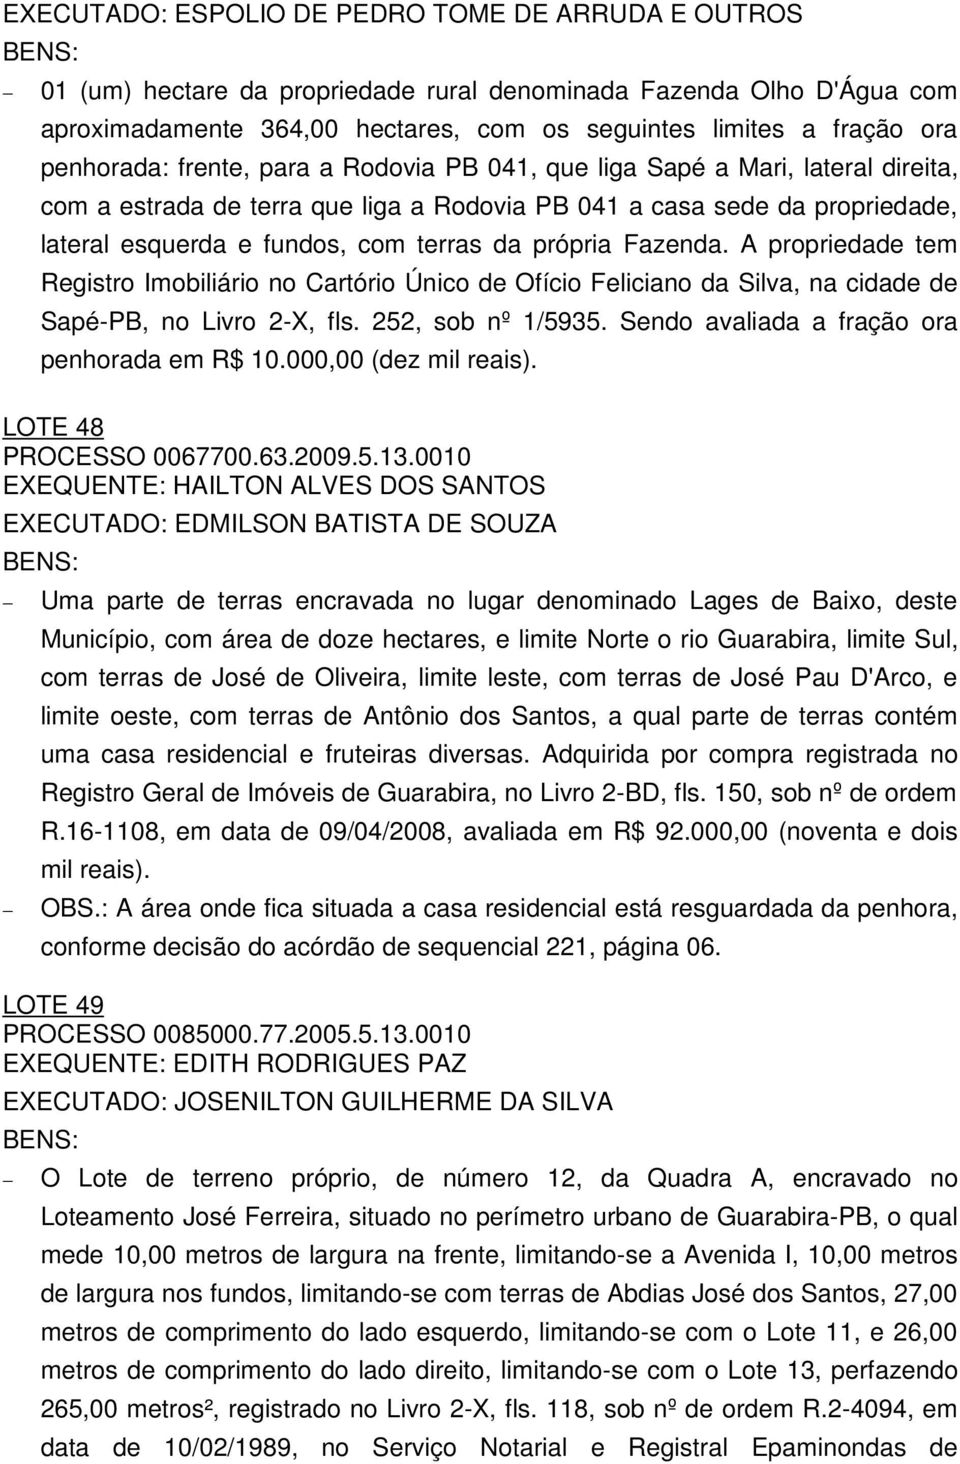 própria Fazenda. A propriedade tem Registro Imobiliário no Cartório Único de Ofício Feliciano da Silva, na cidade de Sapé-PB, no Livro 2-X, fls. 252, sob nº 1/5935.